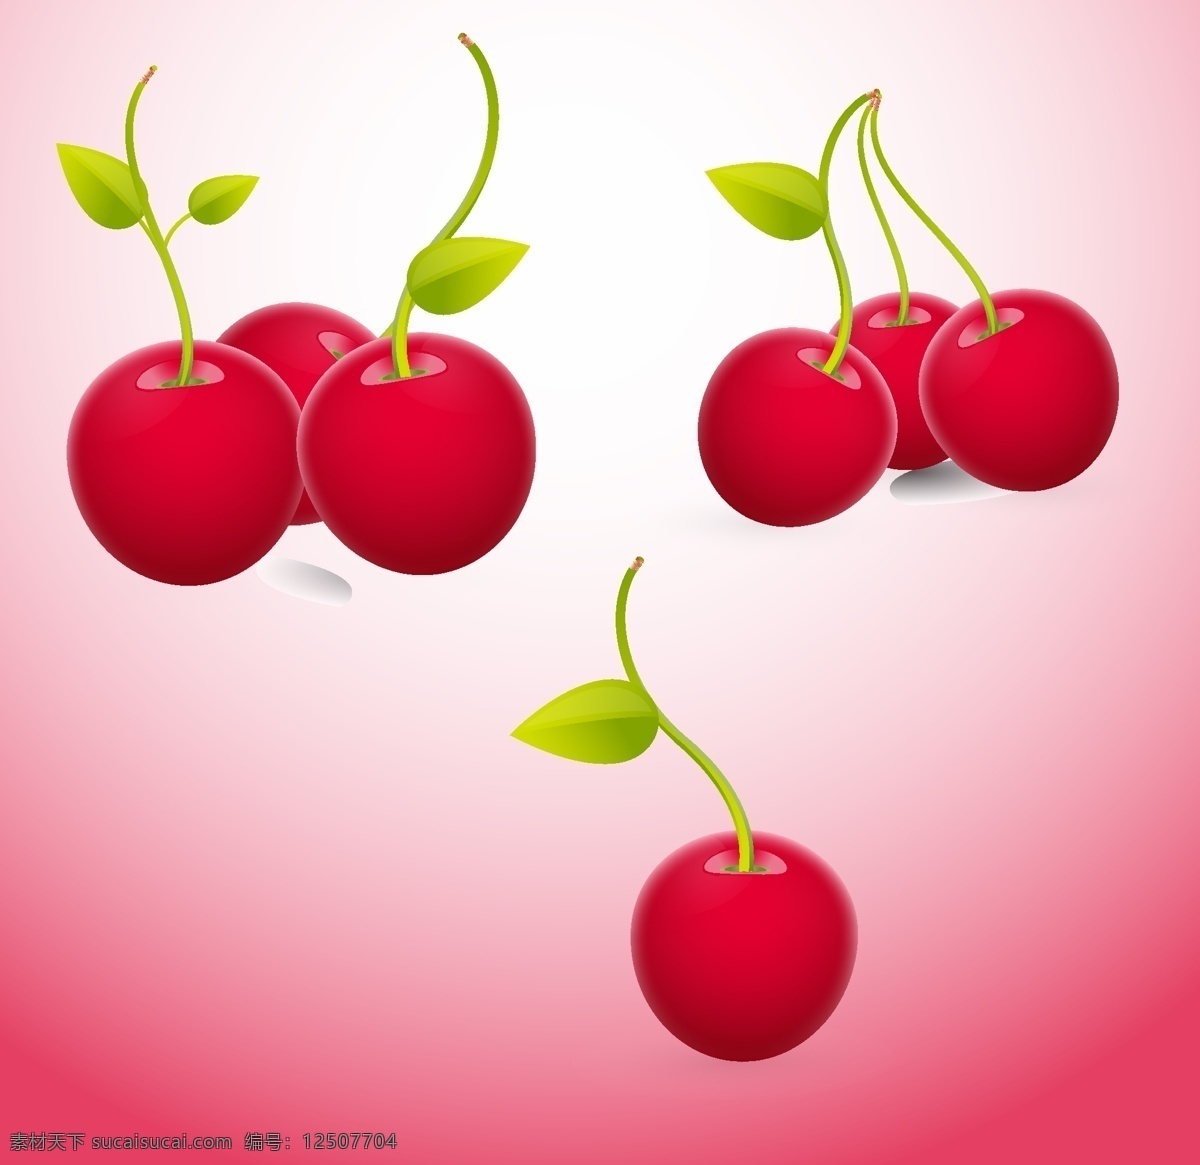 鲜红 樱桃 矢量图 绿叶 鲜红樱桃 红色果实 仿真水果 其他矢量图